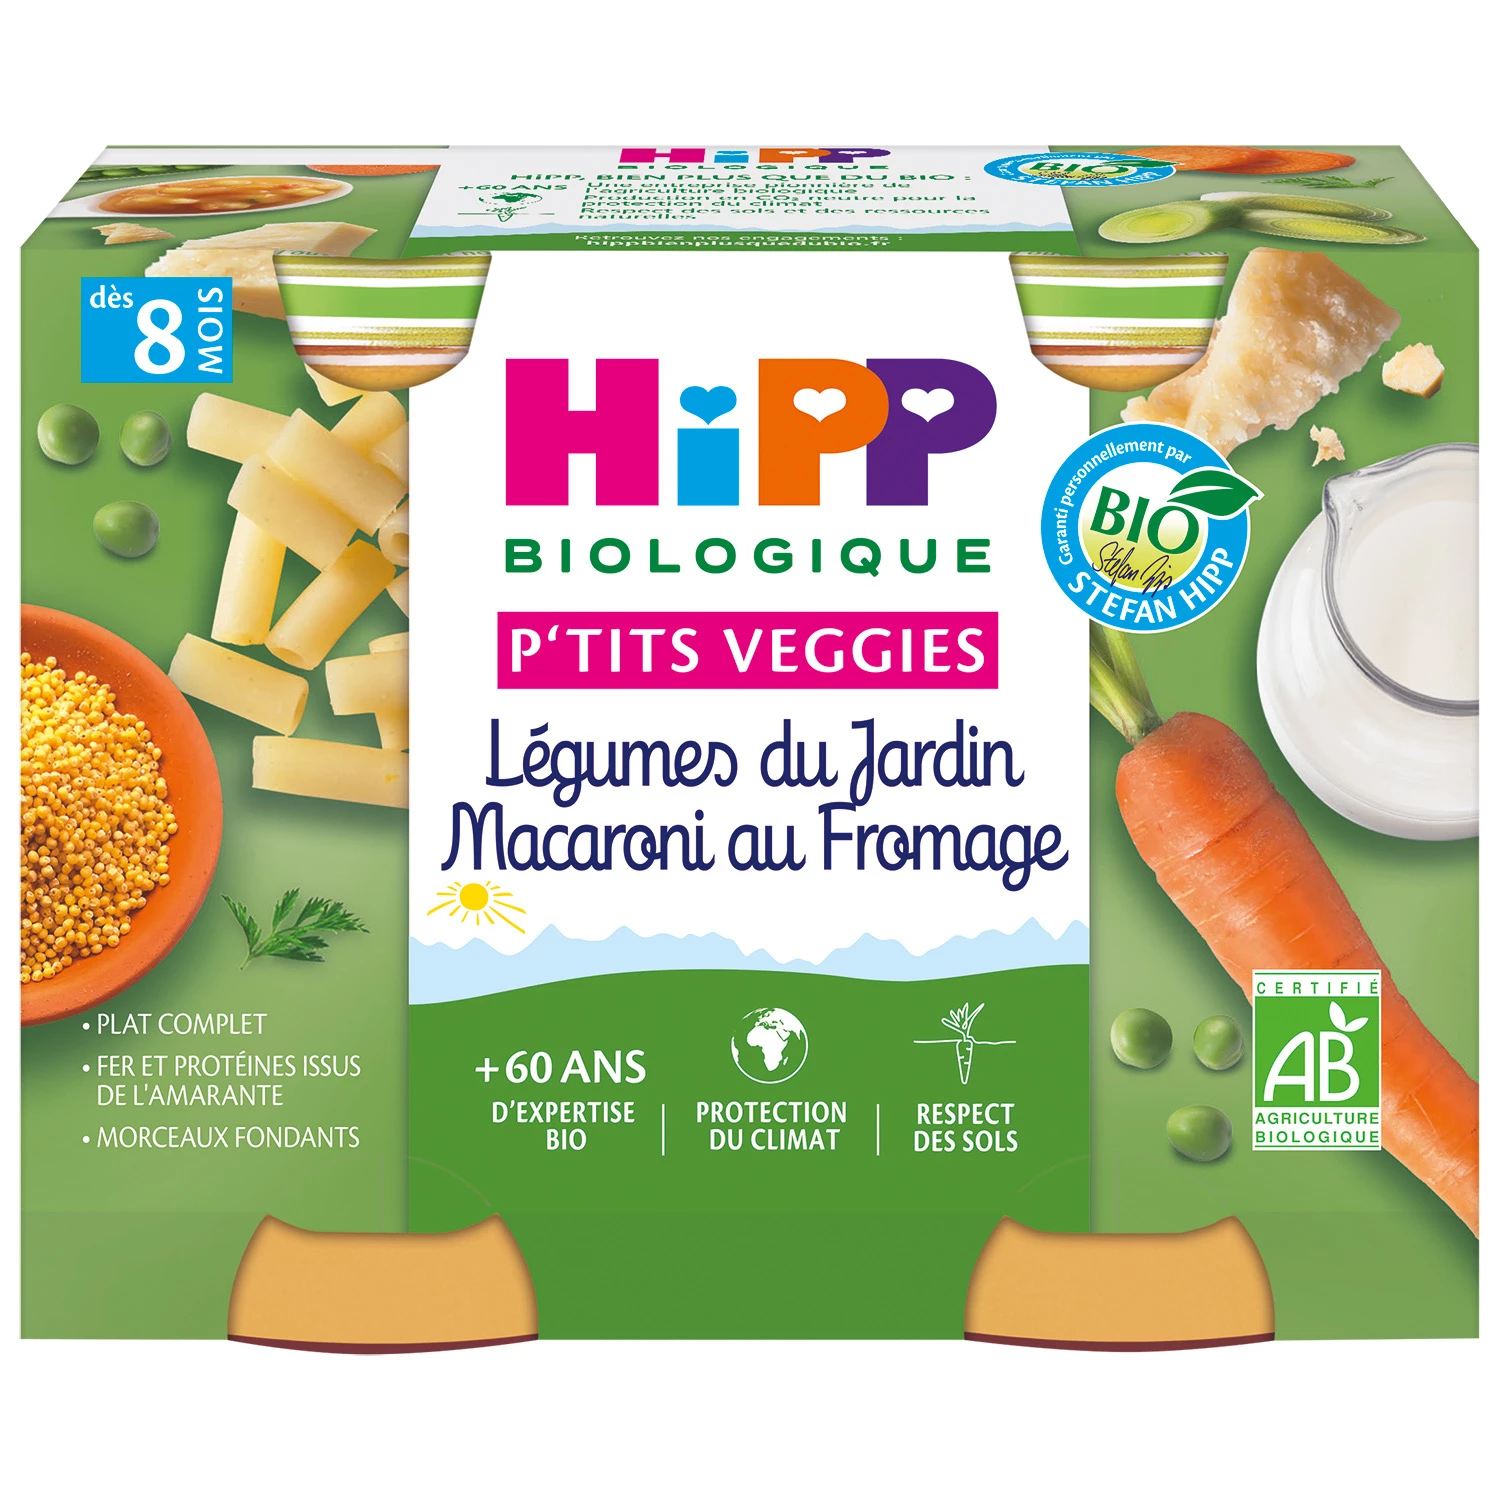 8 个月以上的小婴儿盆有机花园蔬菜通心粉和奶酪，2 盆 190 克 HIPP BioLOGIQUE